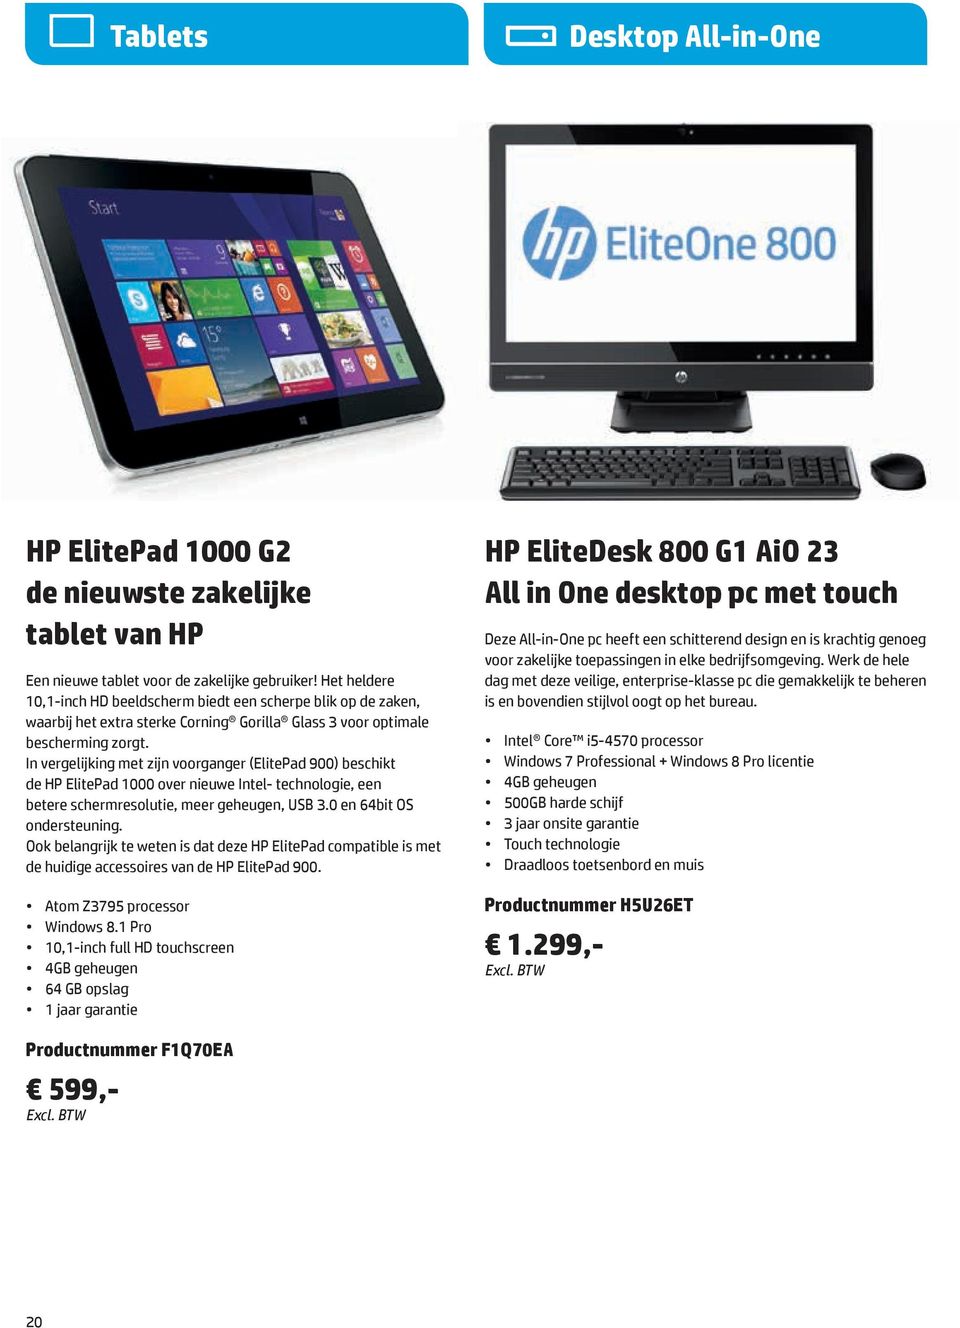 In vergelijking met zijn voorganger (ElitePad 900) beschikt de HP ElitePad 1000 over nieuwe Intel- technologie, een betere schermresolutie, meer geheugen, USB 3.0 en 64bit OS ondersteuning.